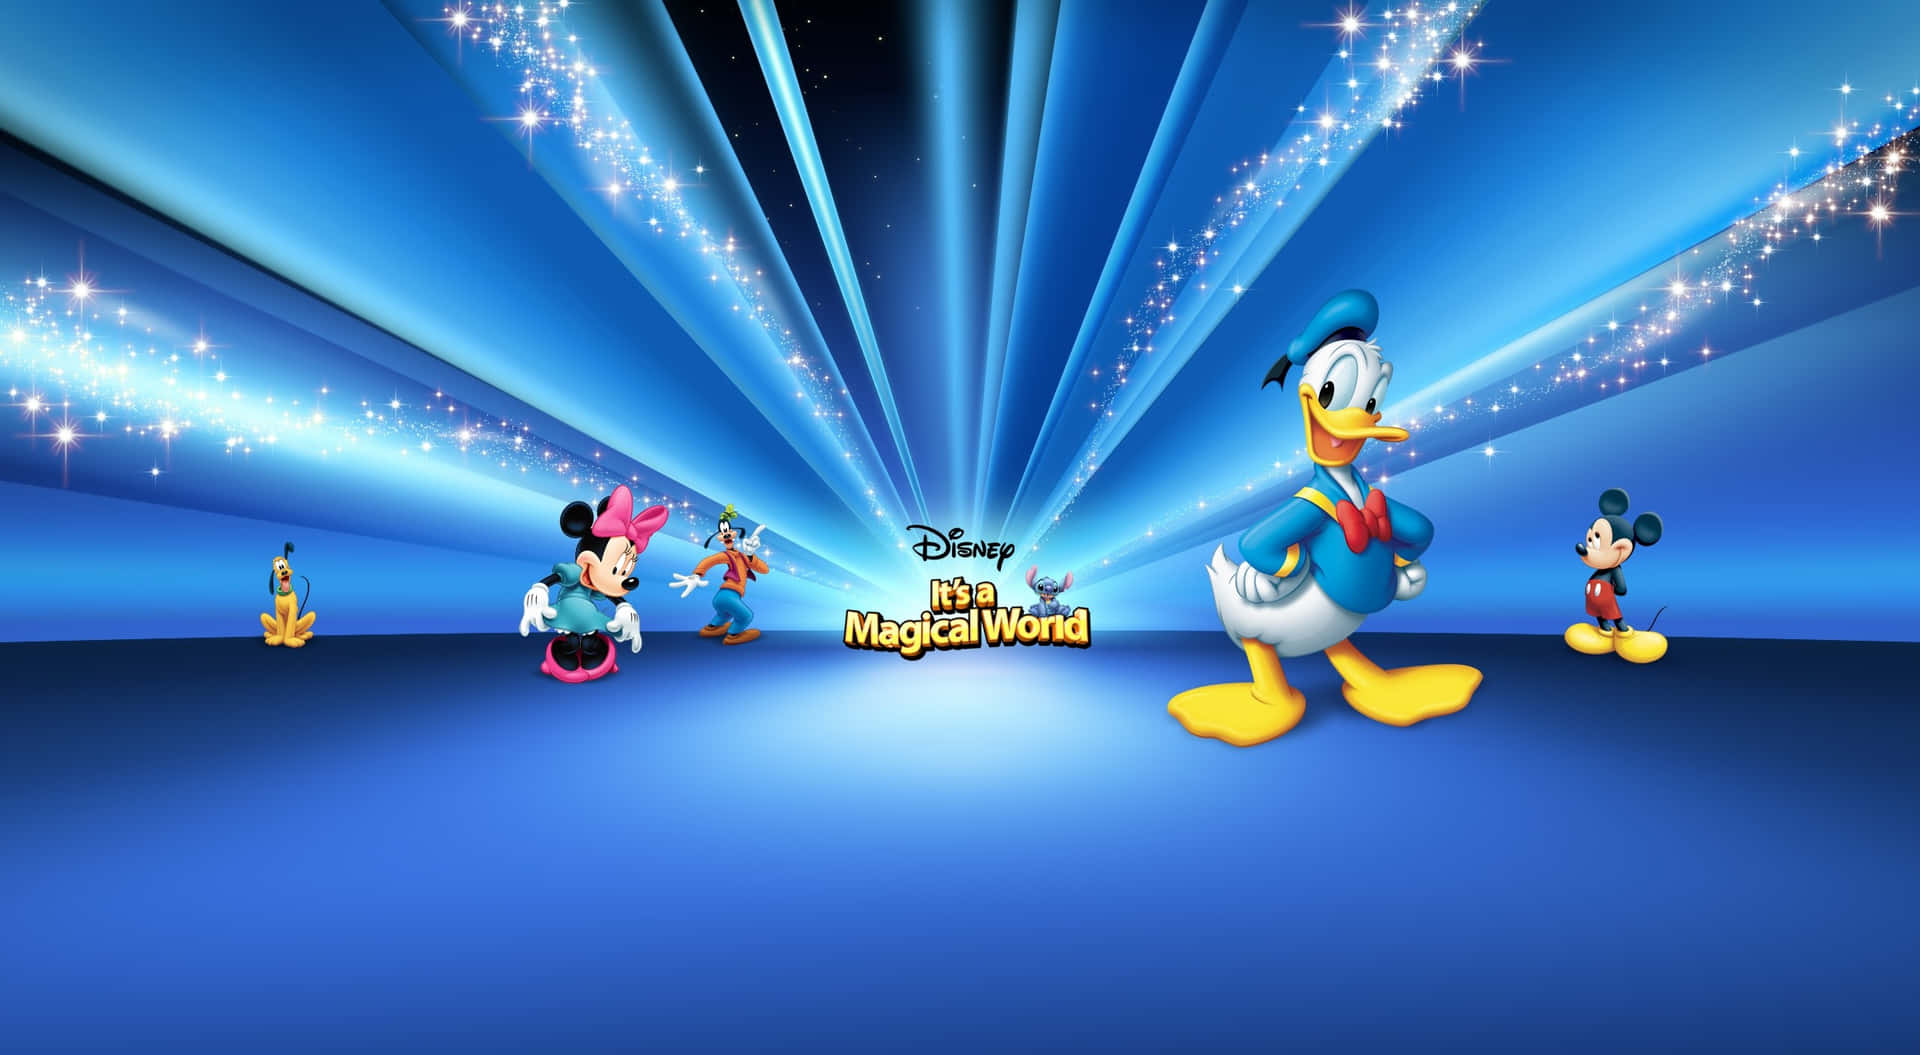 Esist Eine Magische Welt 1440p Disney Hintergrund-plakat.